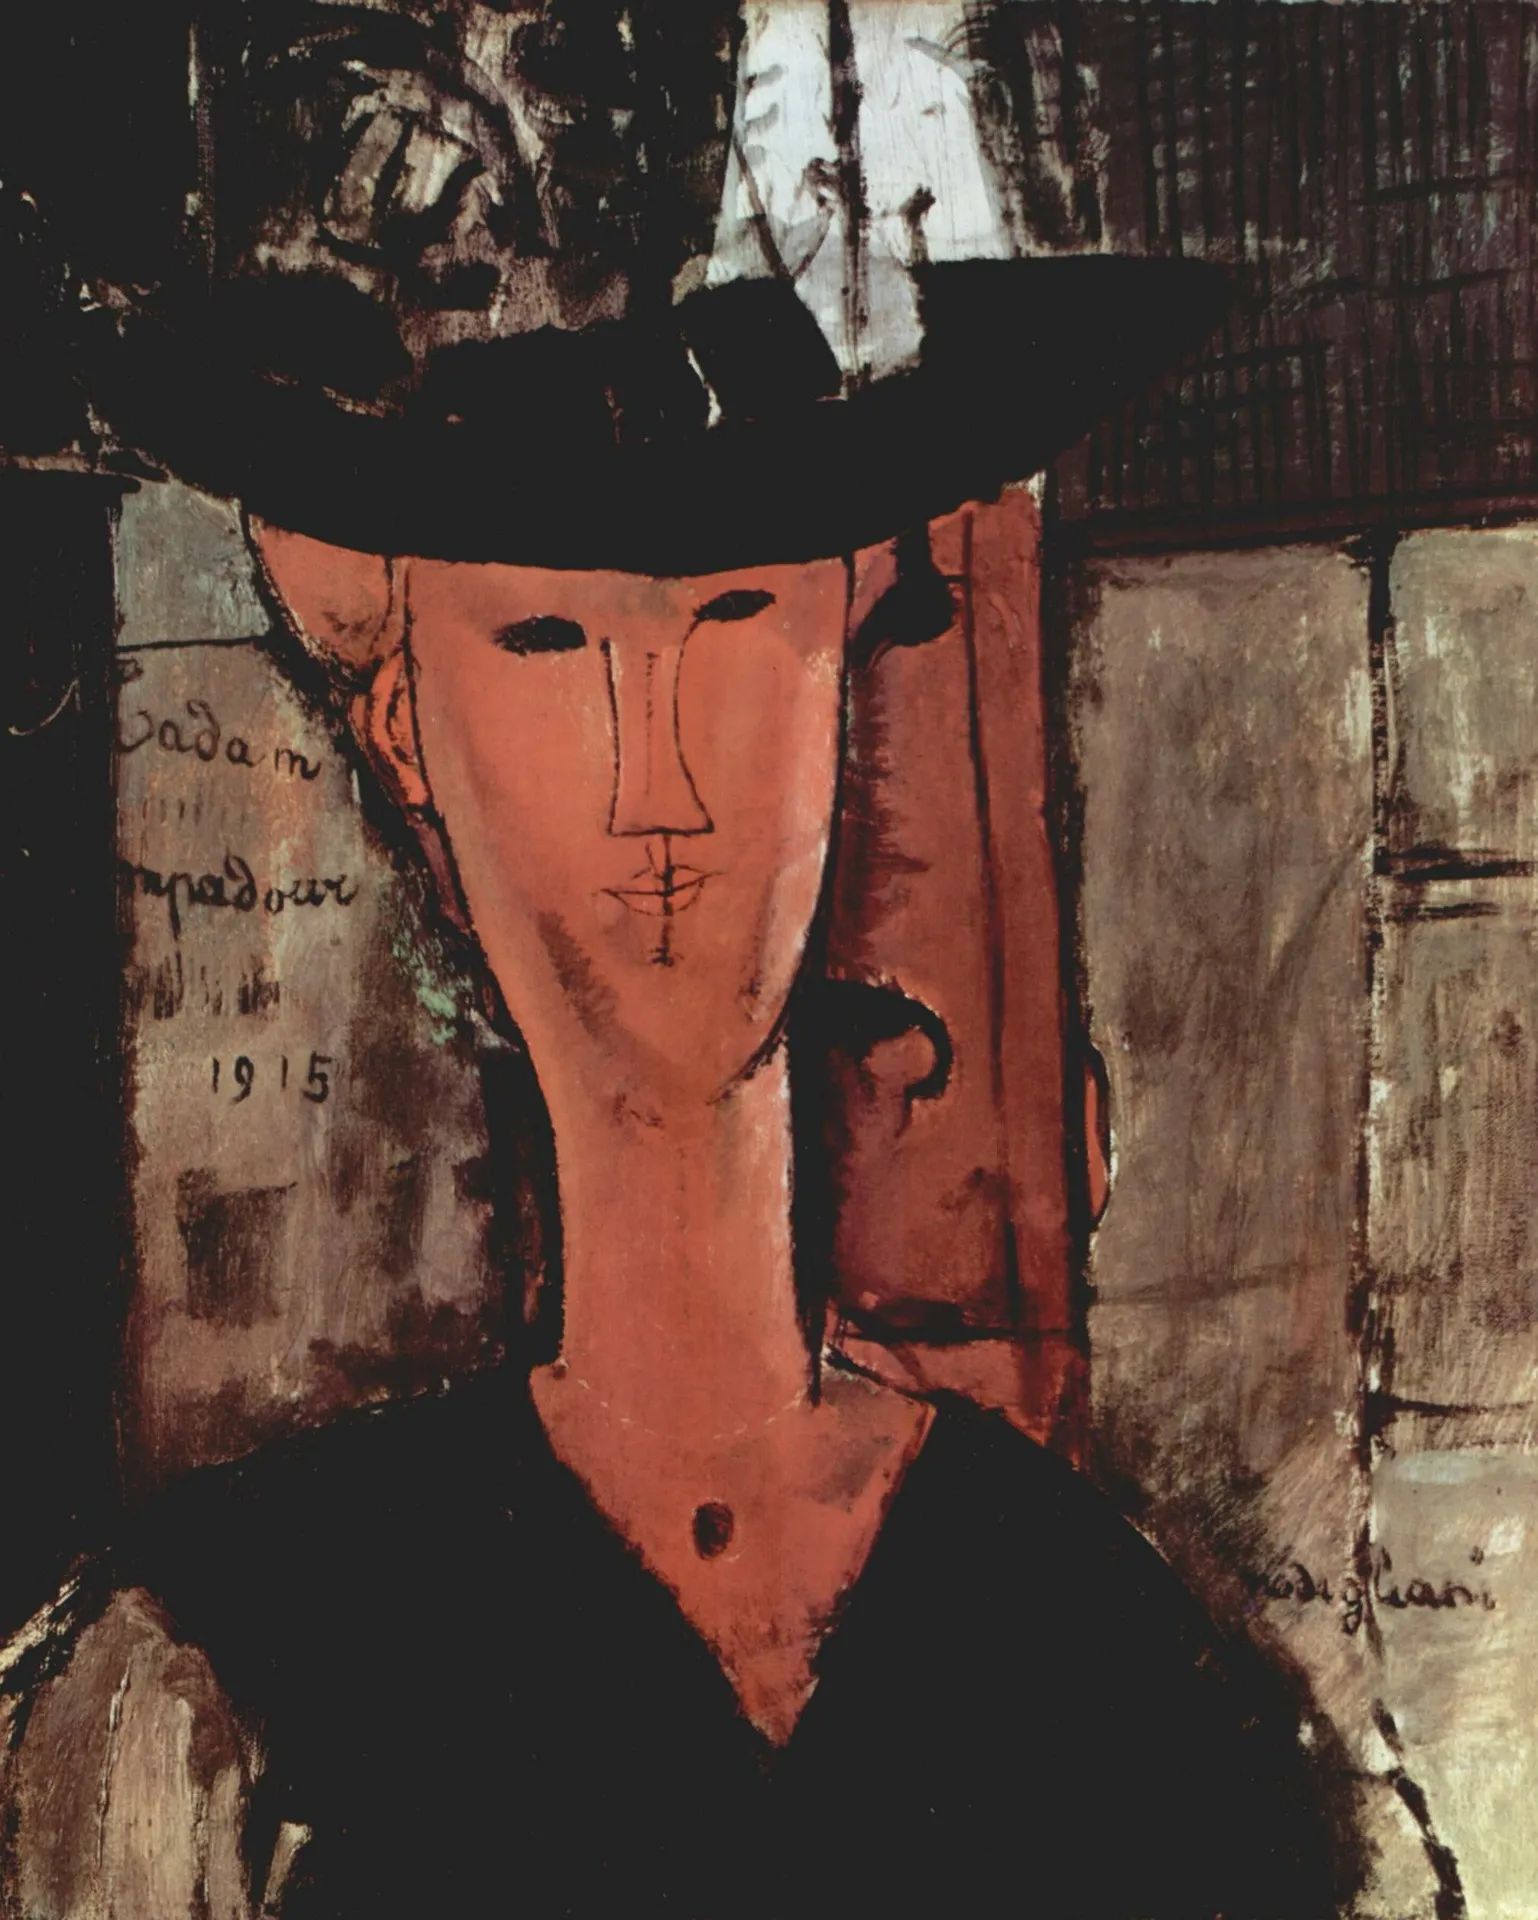 Grande successo per la mostra di Modigliani a Livorno